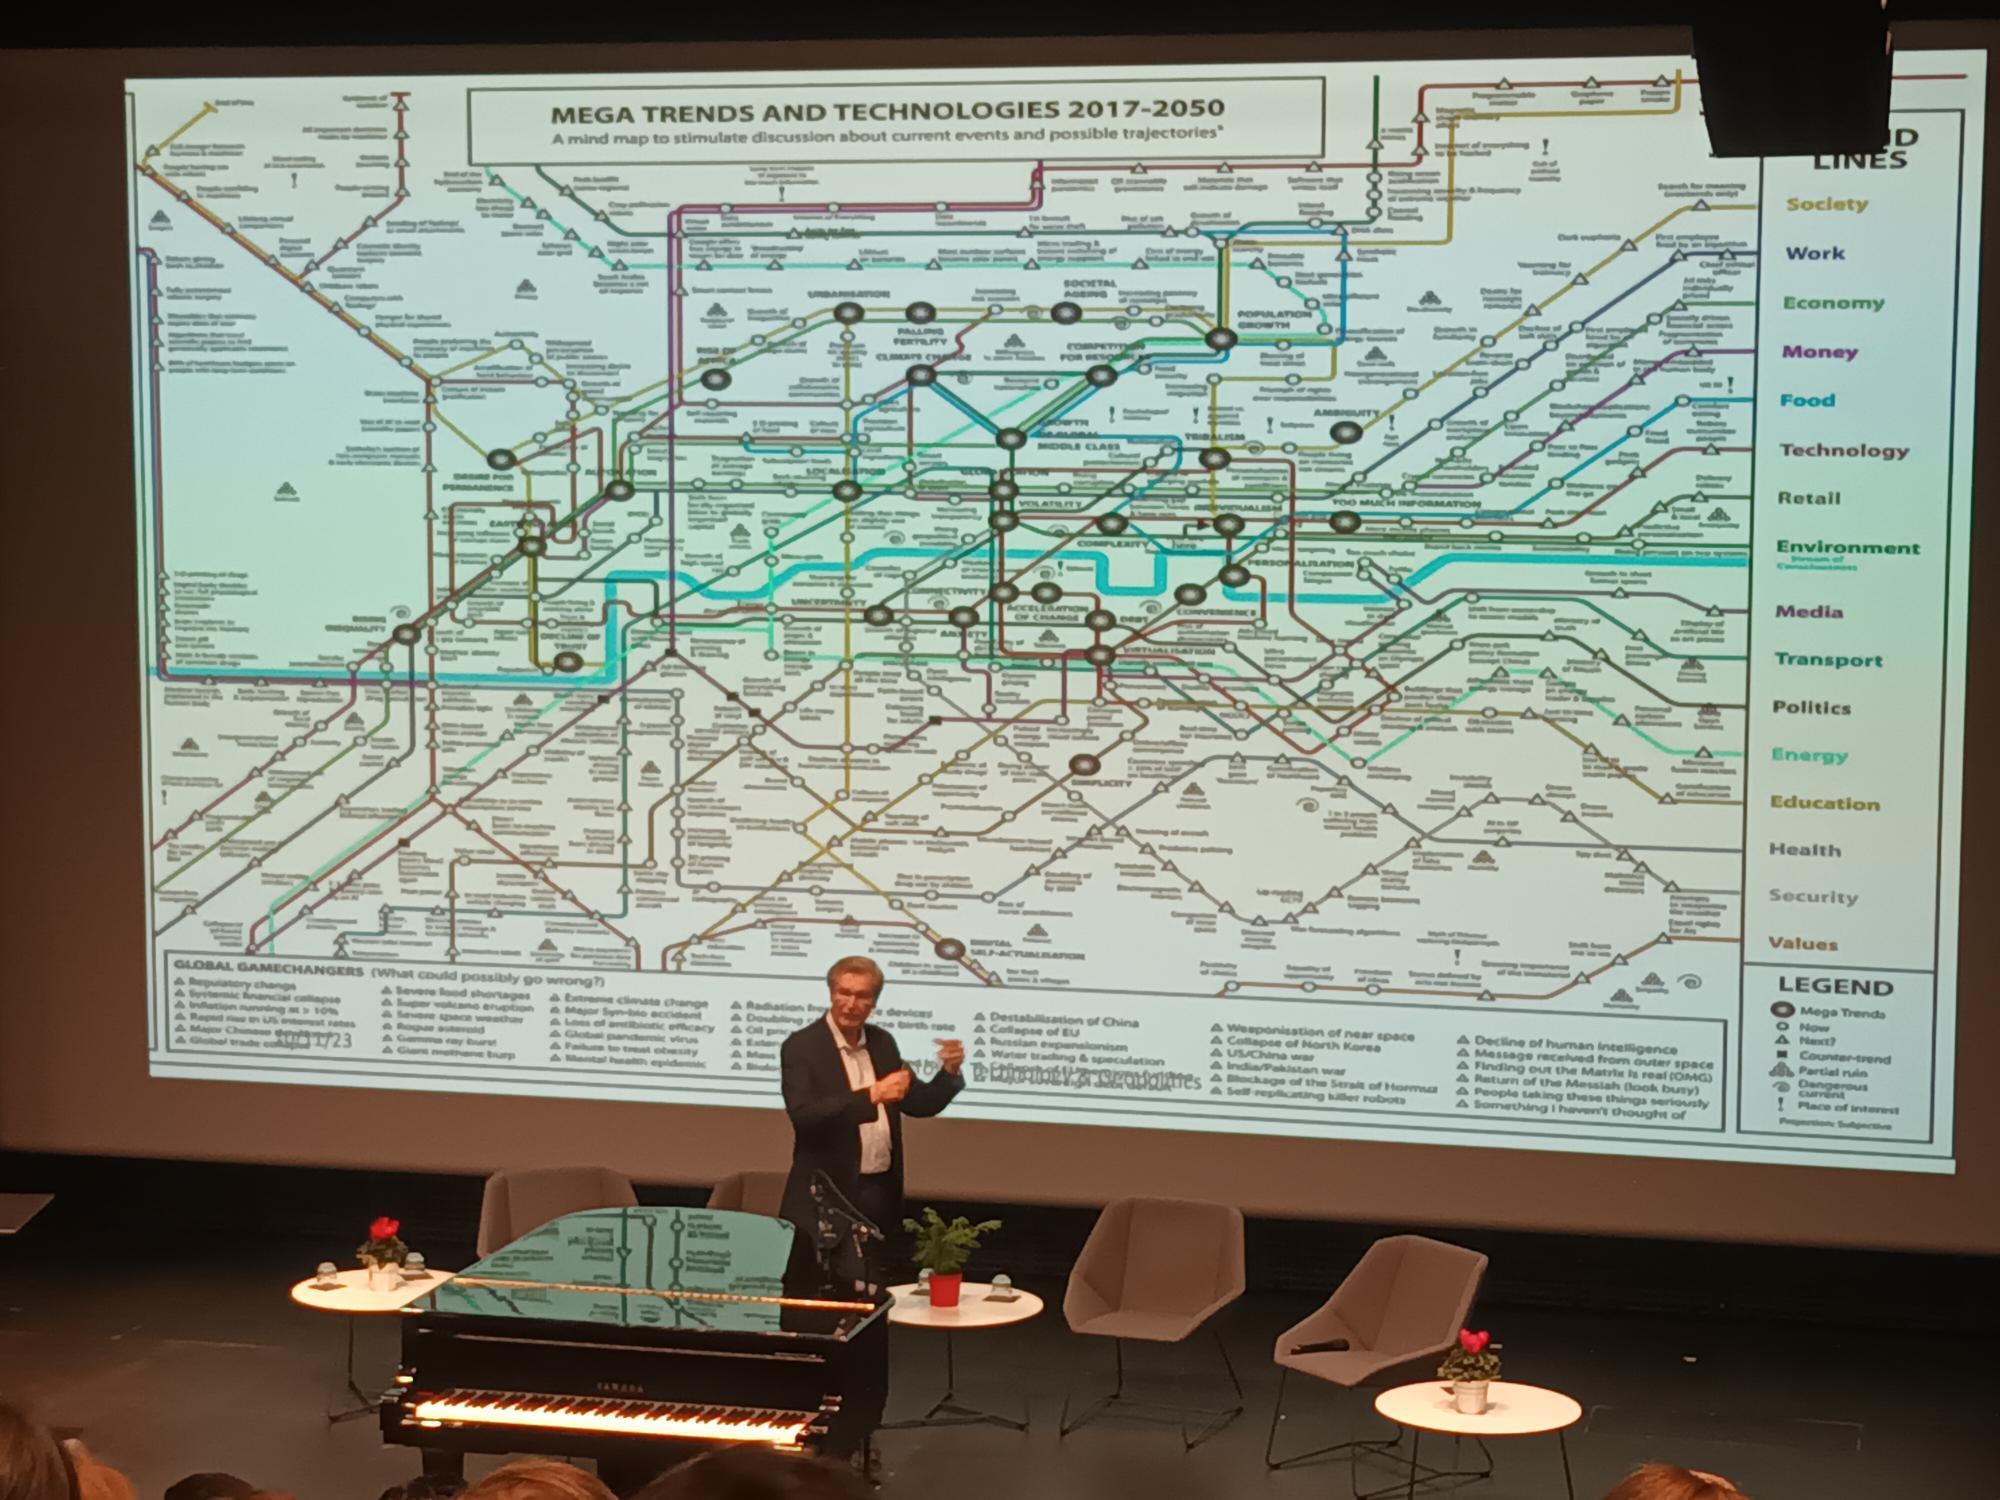 Megatrendien ja teknologioiden välistä suhdetta kuvastava metro-kartta, joka muistuttaa Lontoon karttaa. Asemien ja linjojen nimien tilalla yhteiskunnallisia ja poliittisia trendejä ja erilaisia teknisiä innovaatioita.